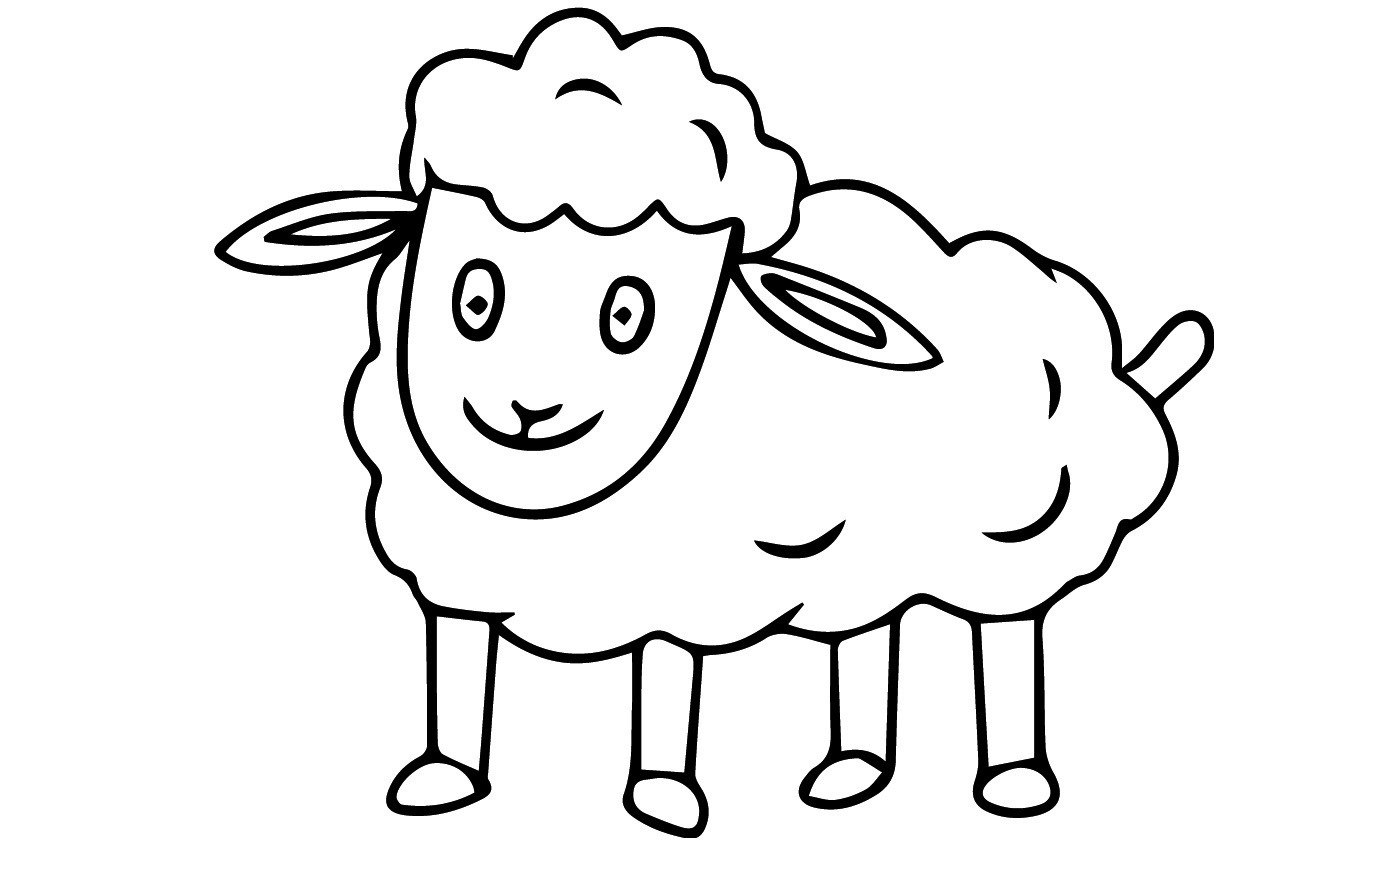 Lamb hero image